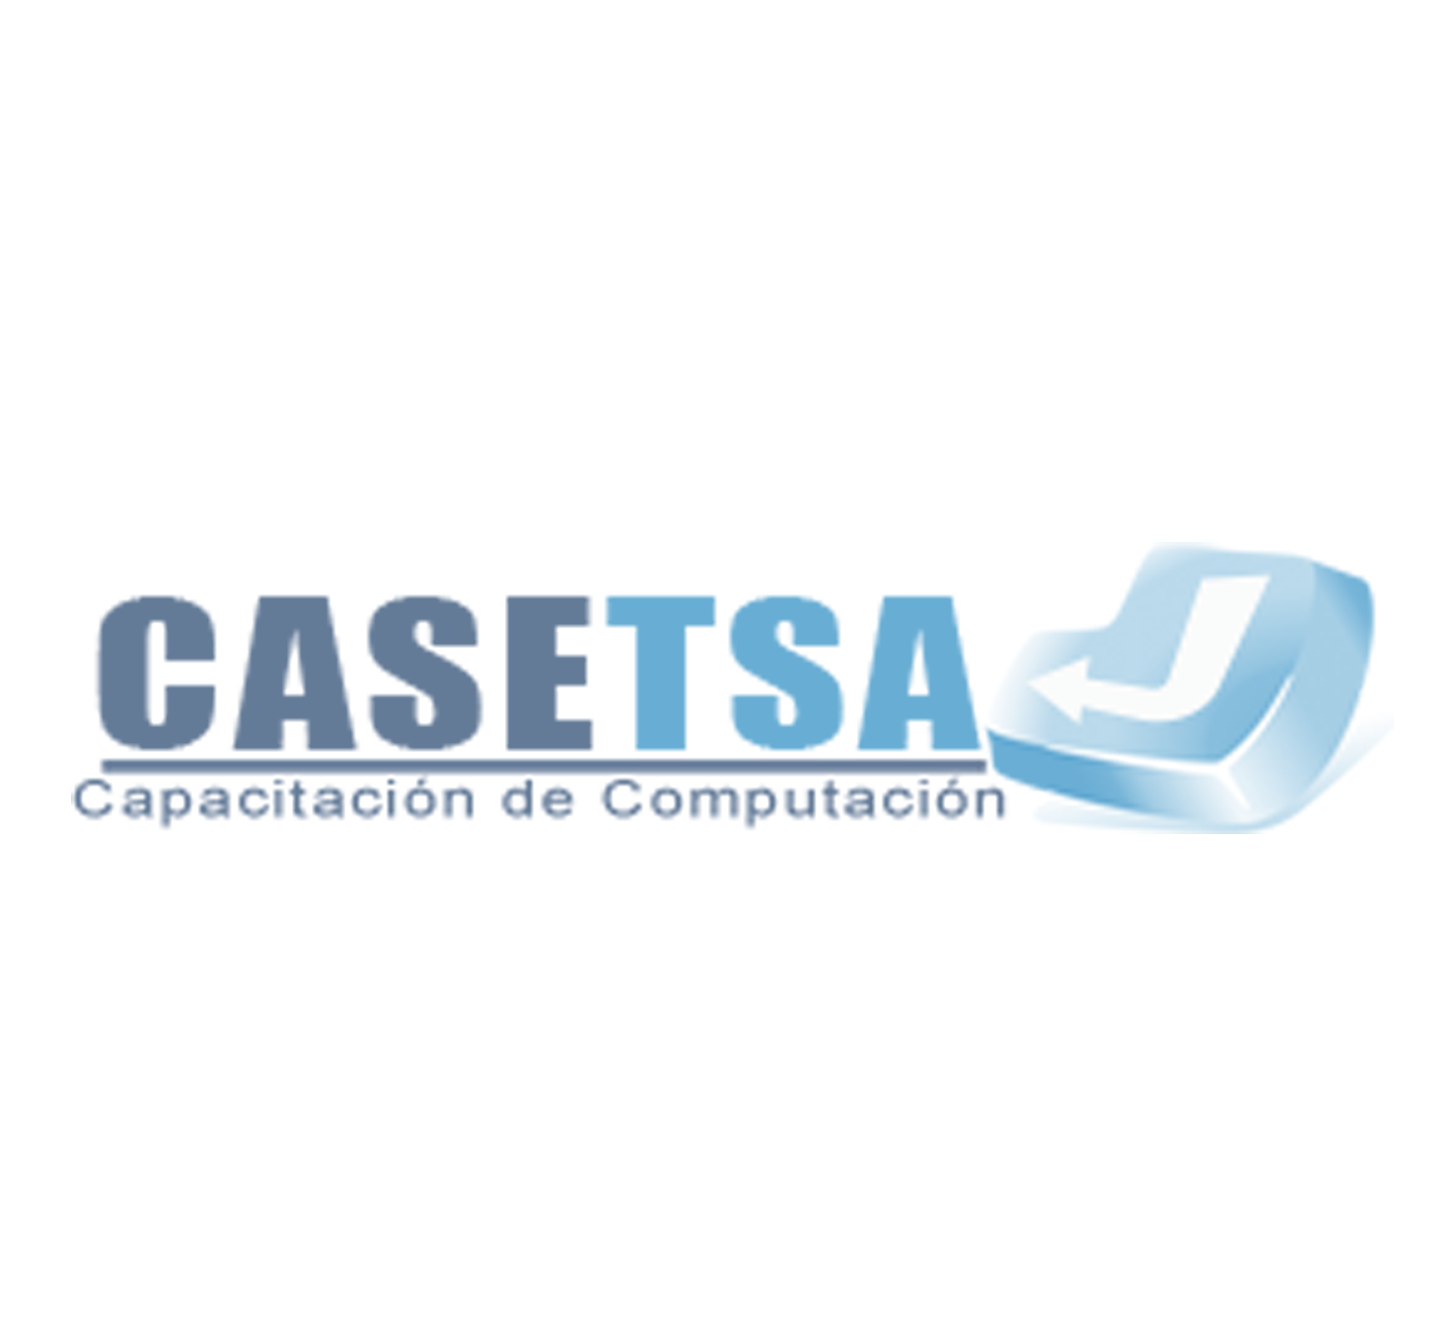 Proyecto de Diseño Logotipo CASETSA por Otto García